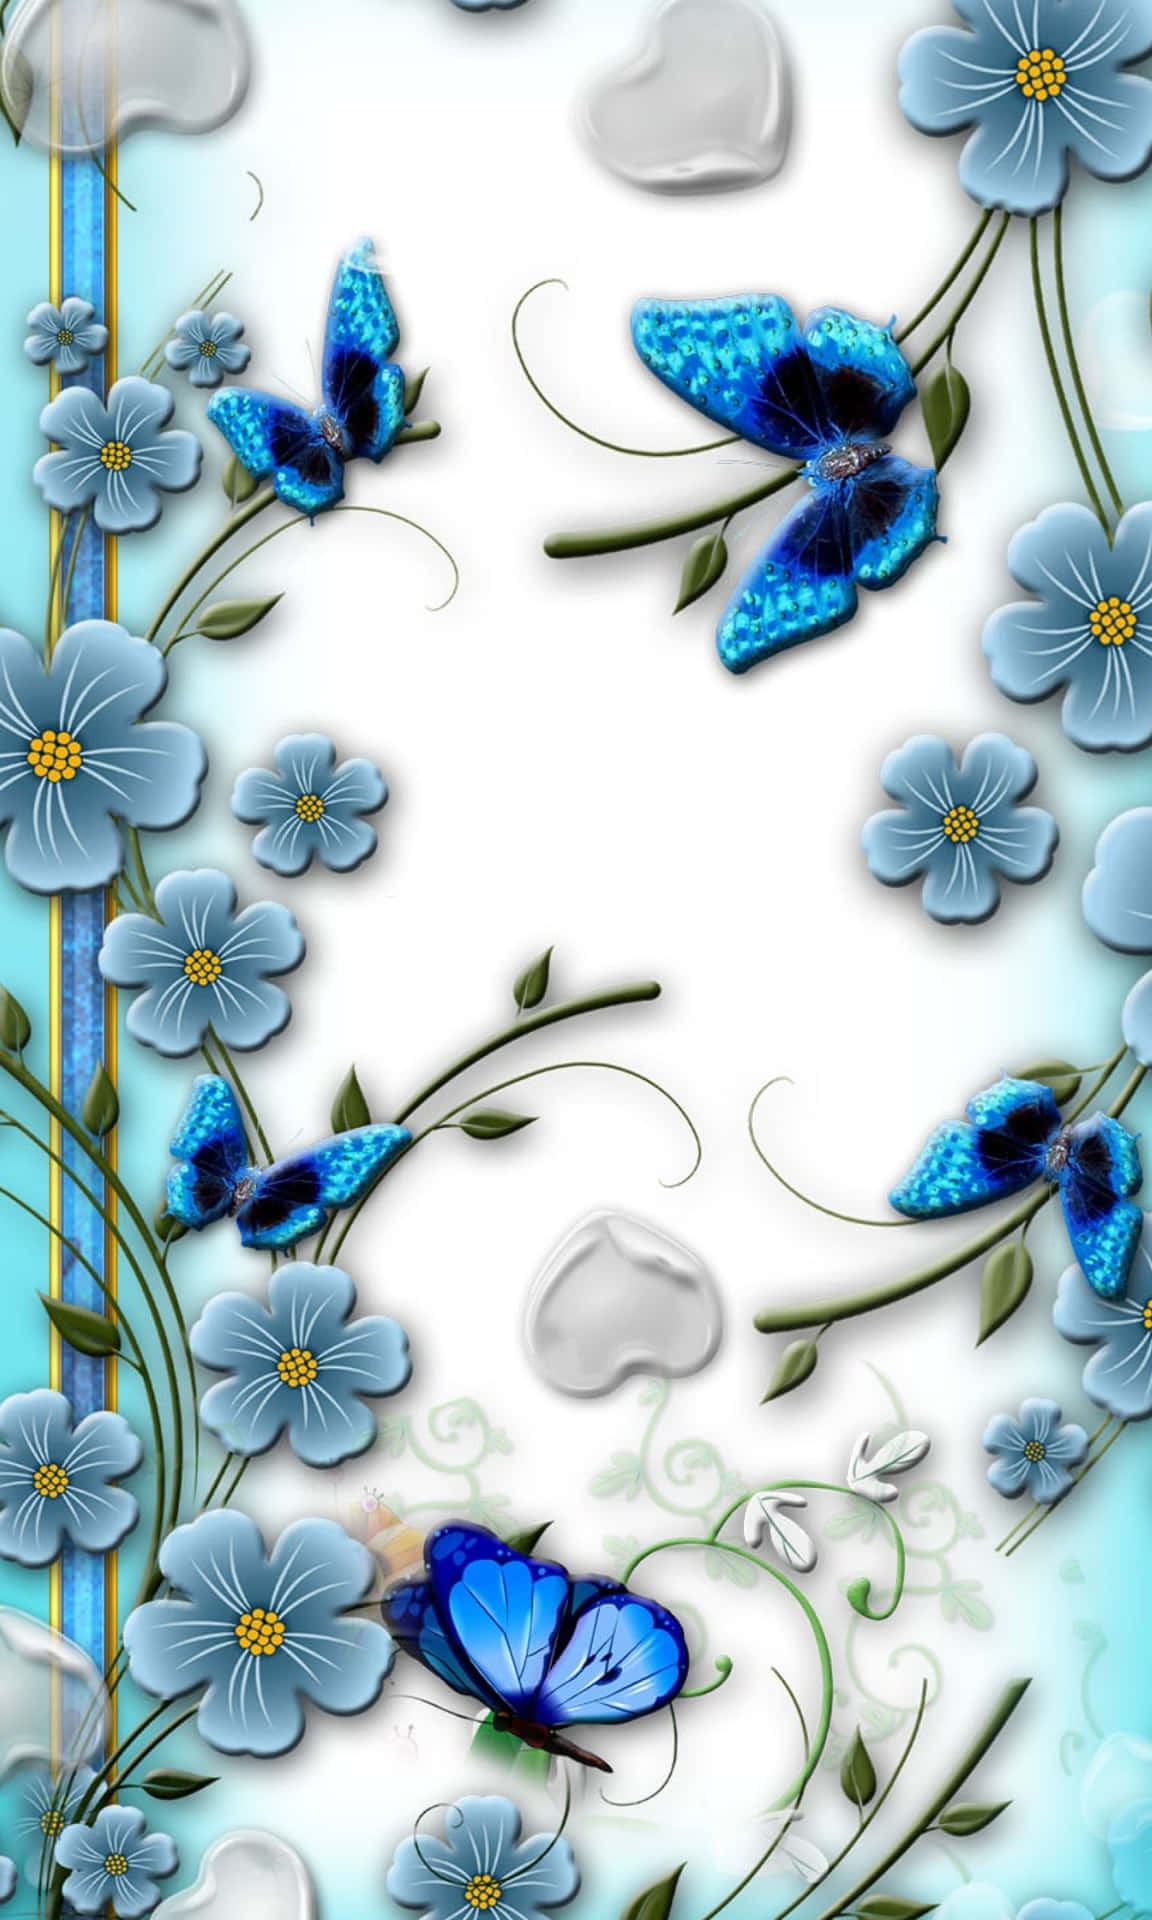 Umaborboleta Azul Brilhante.